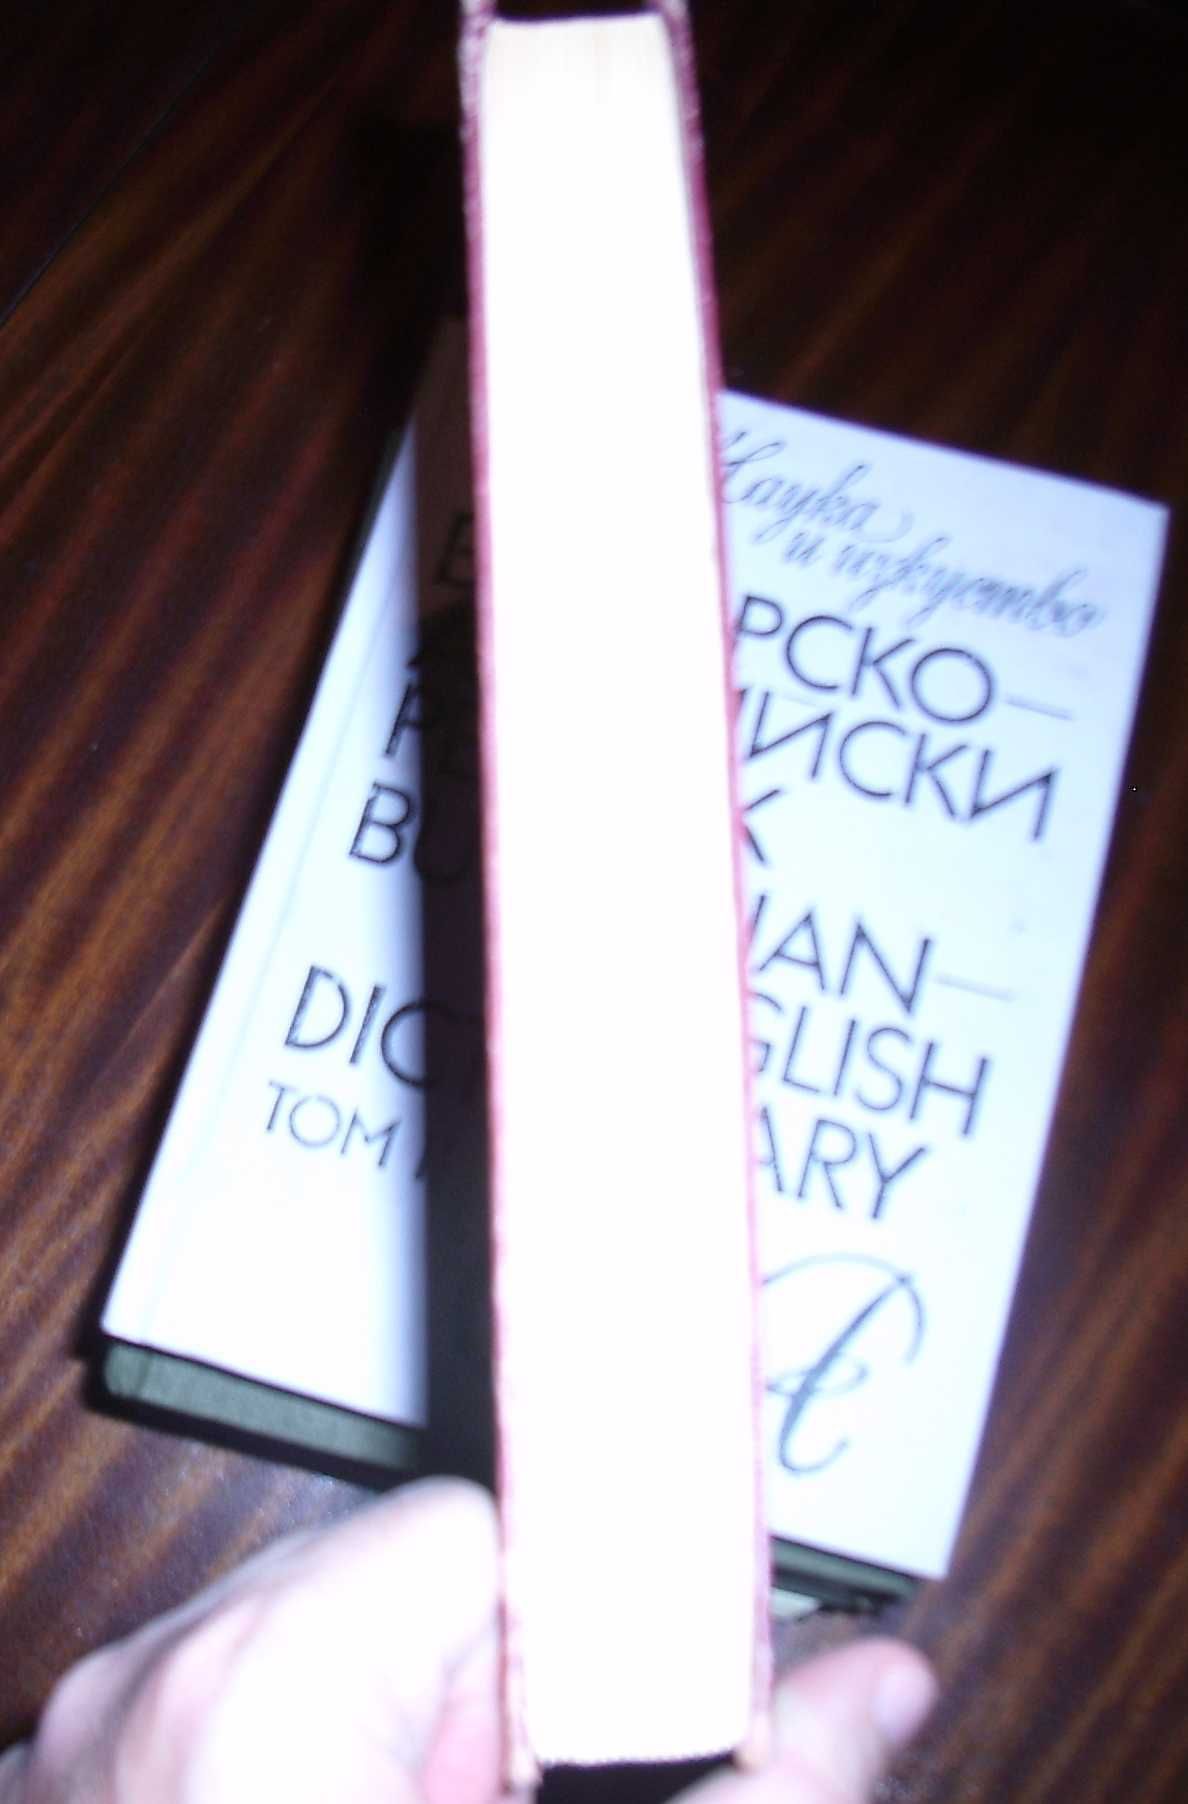 Българско-Английски речник, 2 тома - 25лв